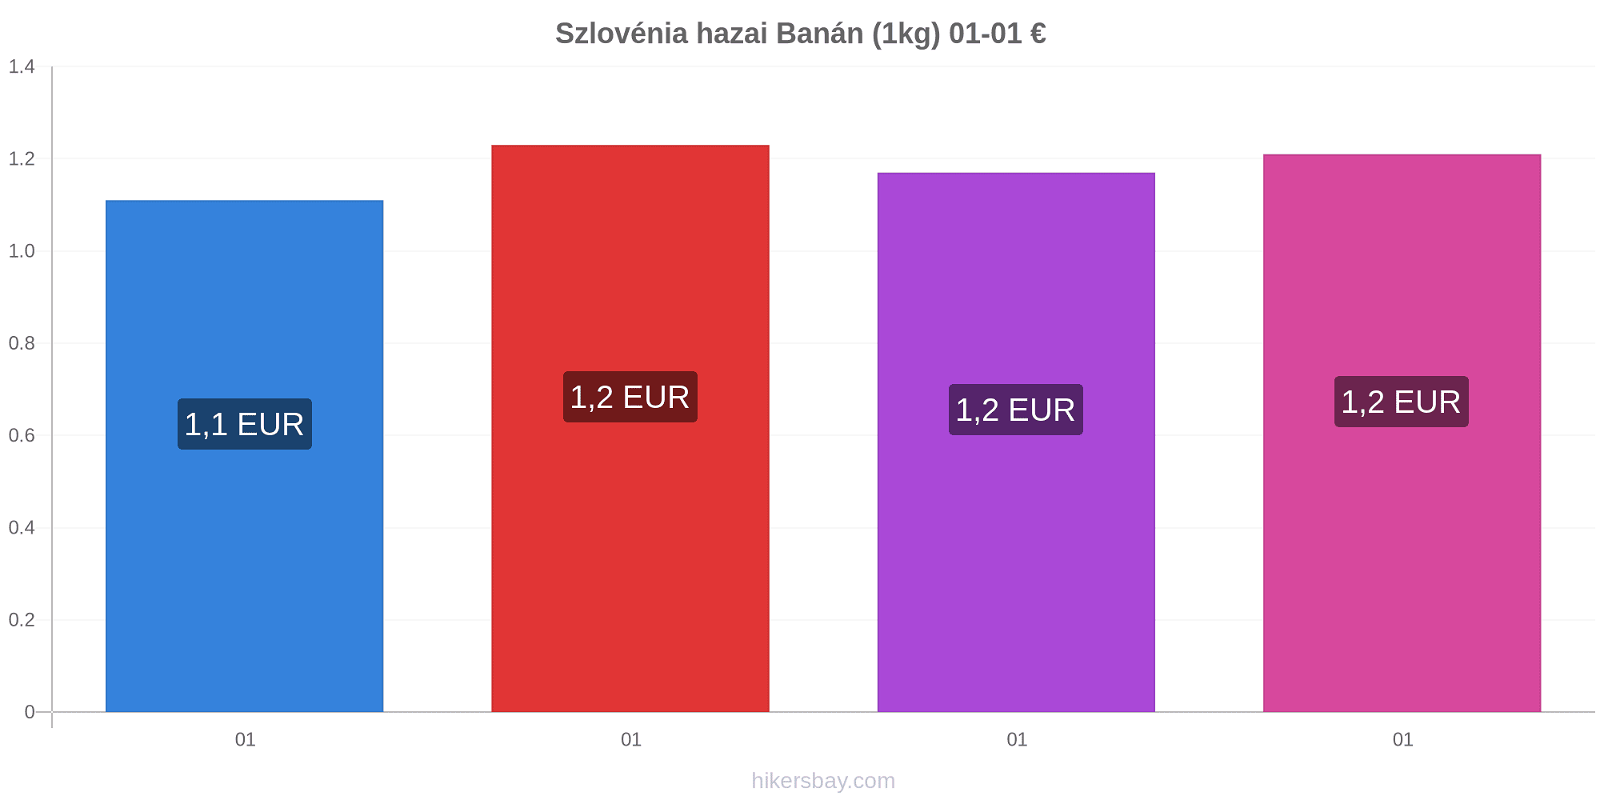 Szlovénia hazai árváltozások Banán (1kg) hikersbay.com